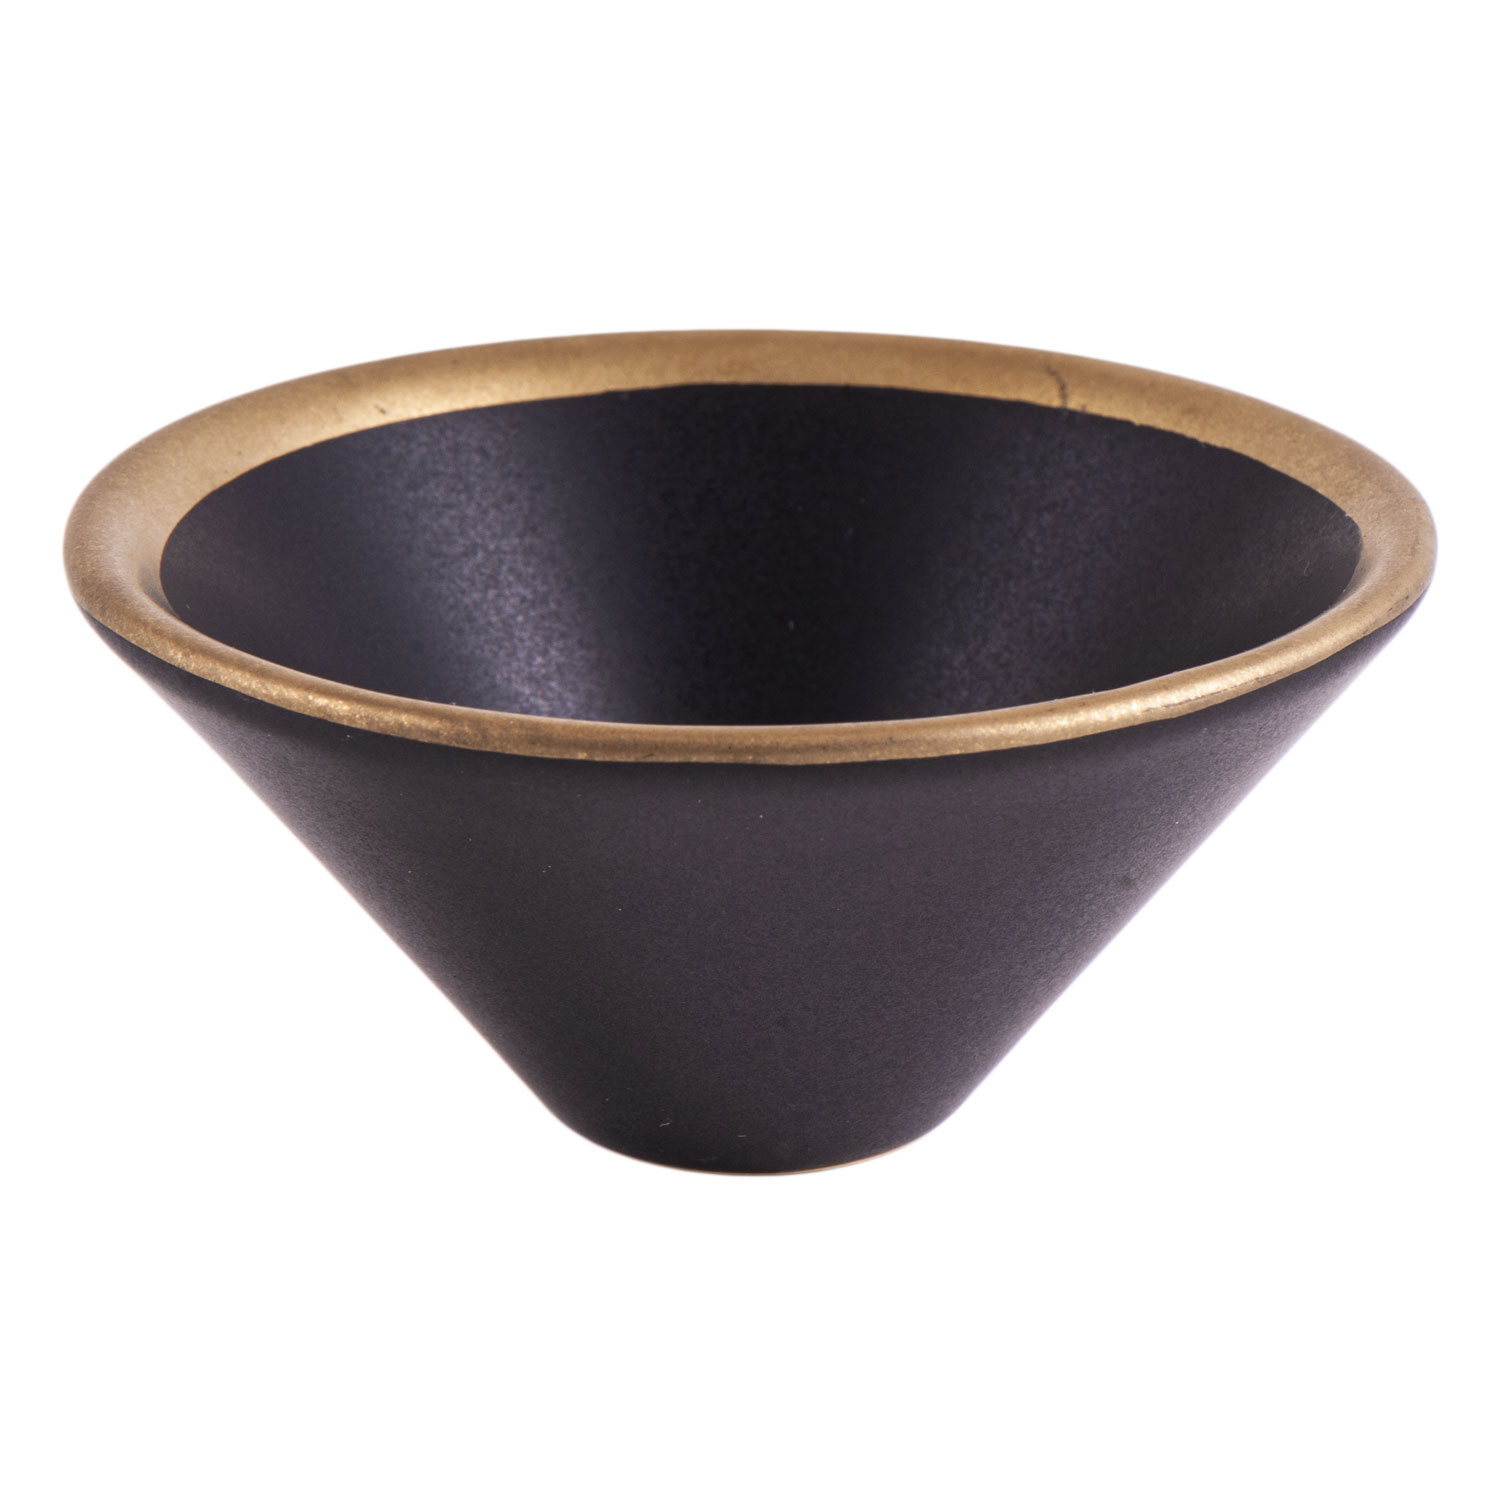 Keramik-Räucherschale, schwarz/gold, Produktbild 1